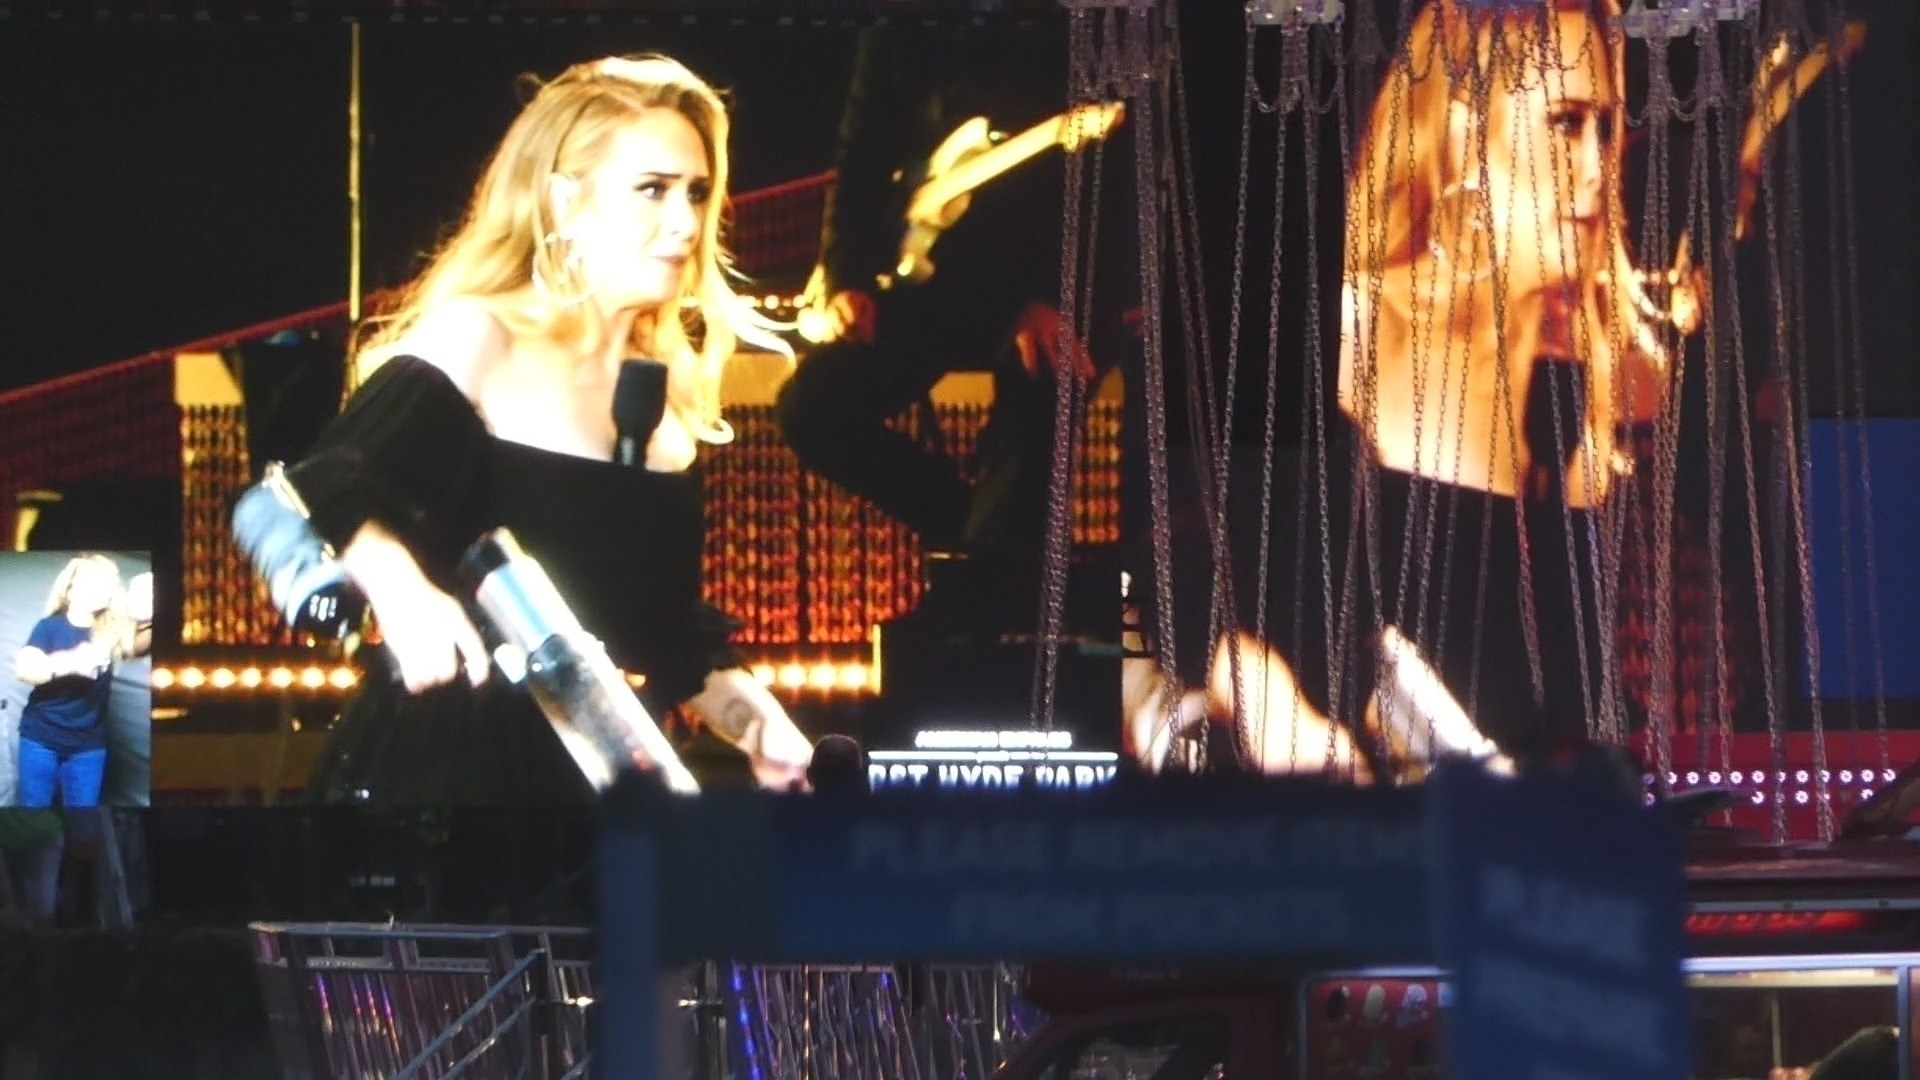 Adele holding a T-shirt gun during a concert